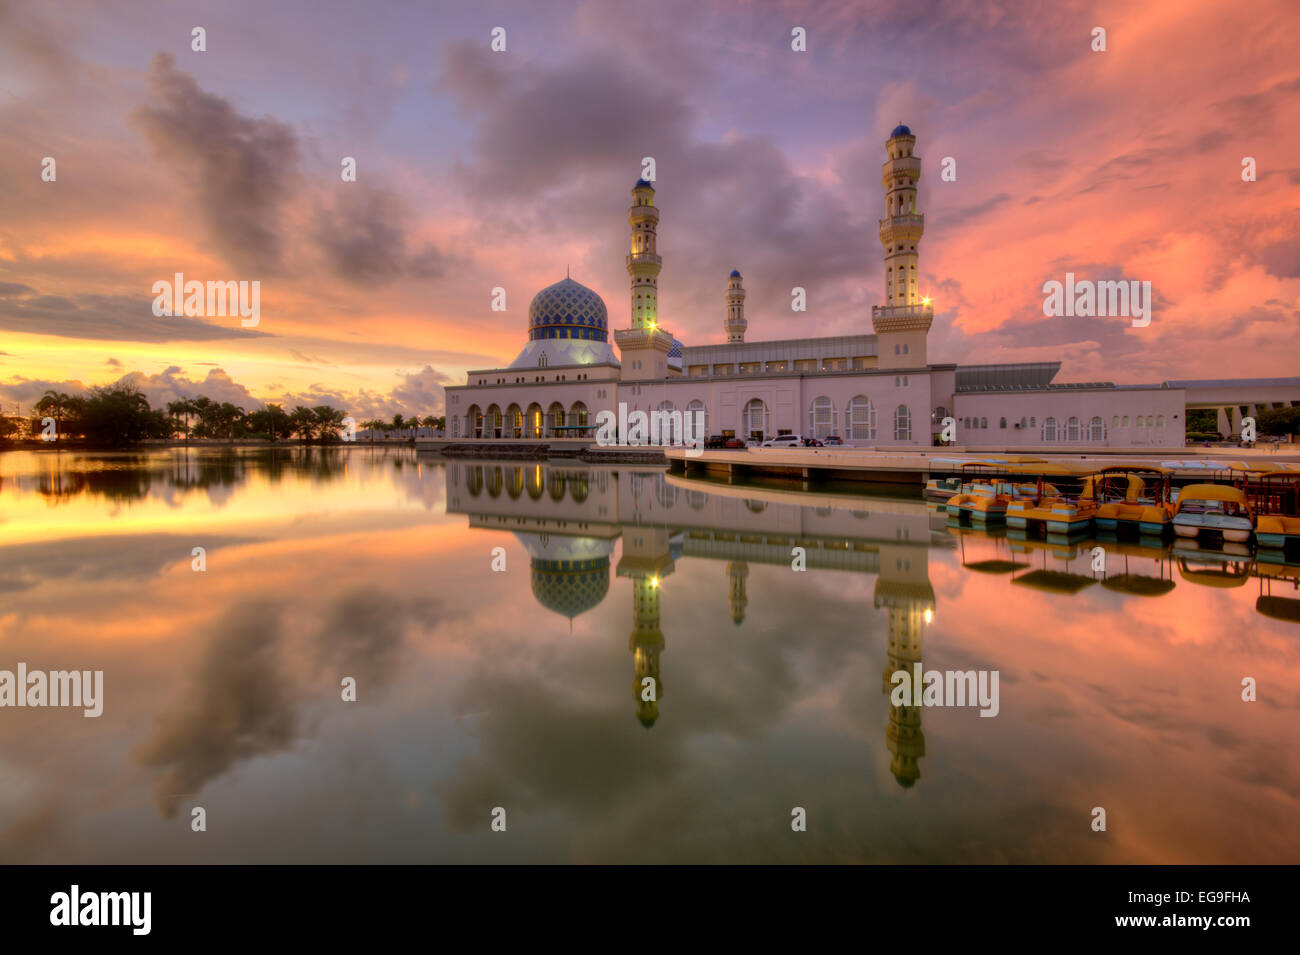 La Malaisie, Sabah, Kota Kinabalu City Mosquée, mosquée de vue pendant le coucher du soleil Banque D'Images